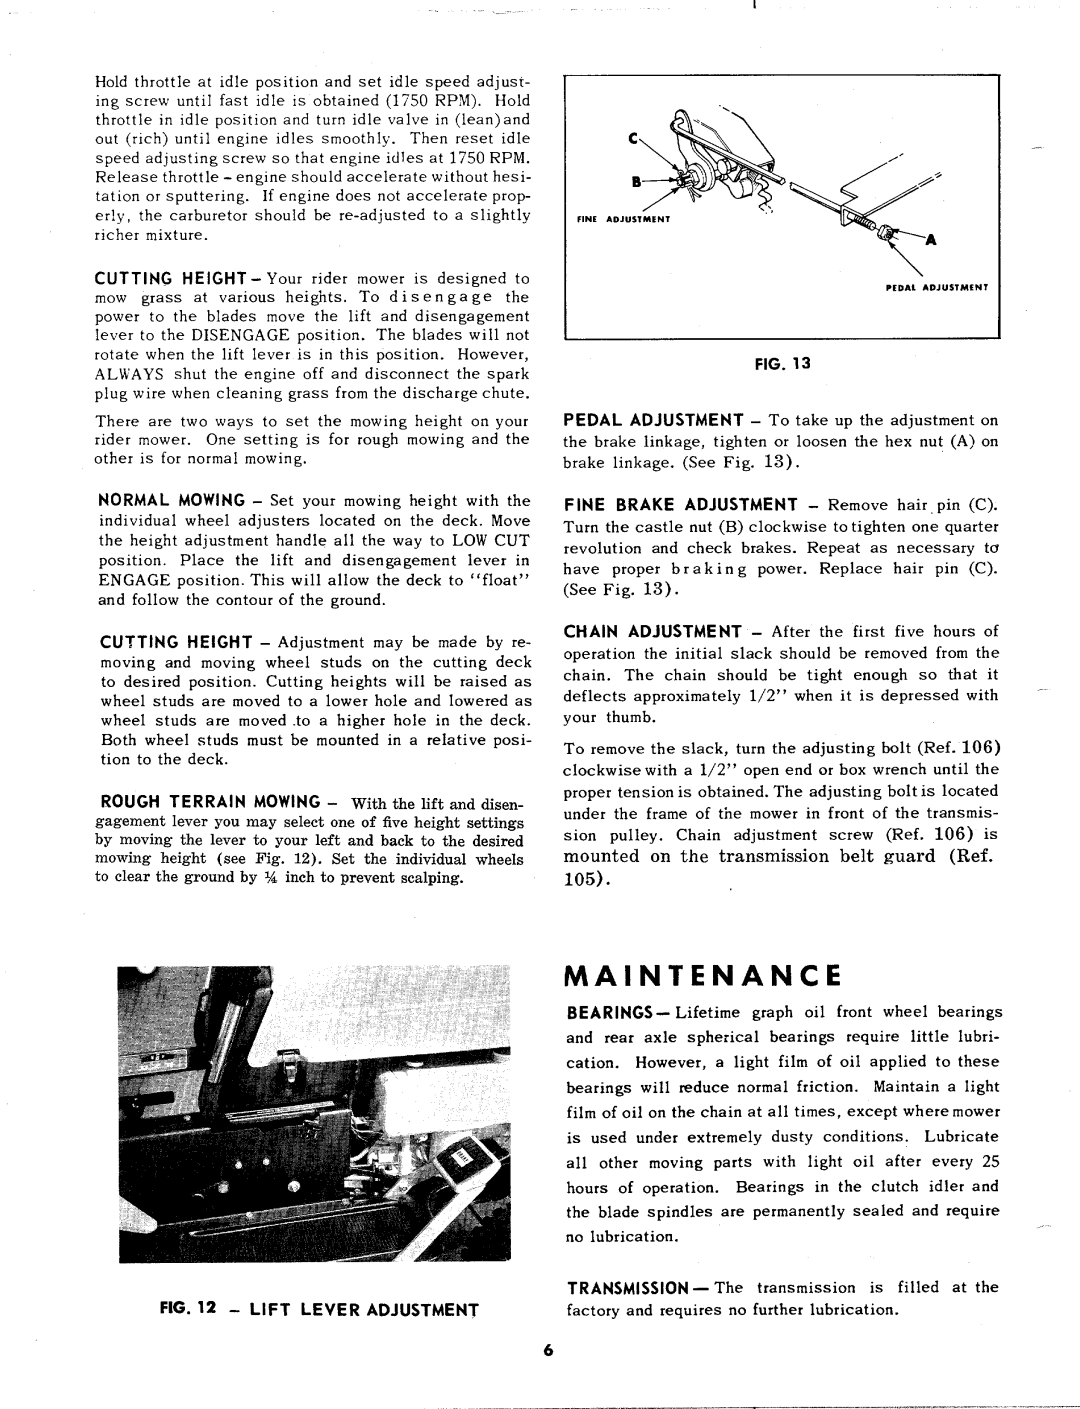 MTD 131-418 manual 